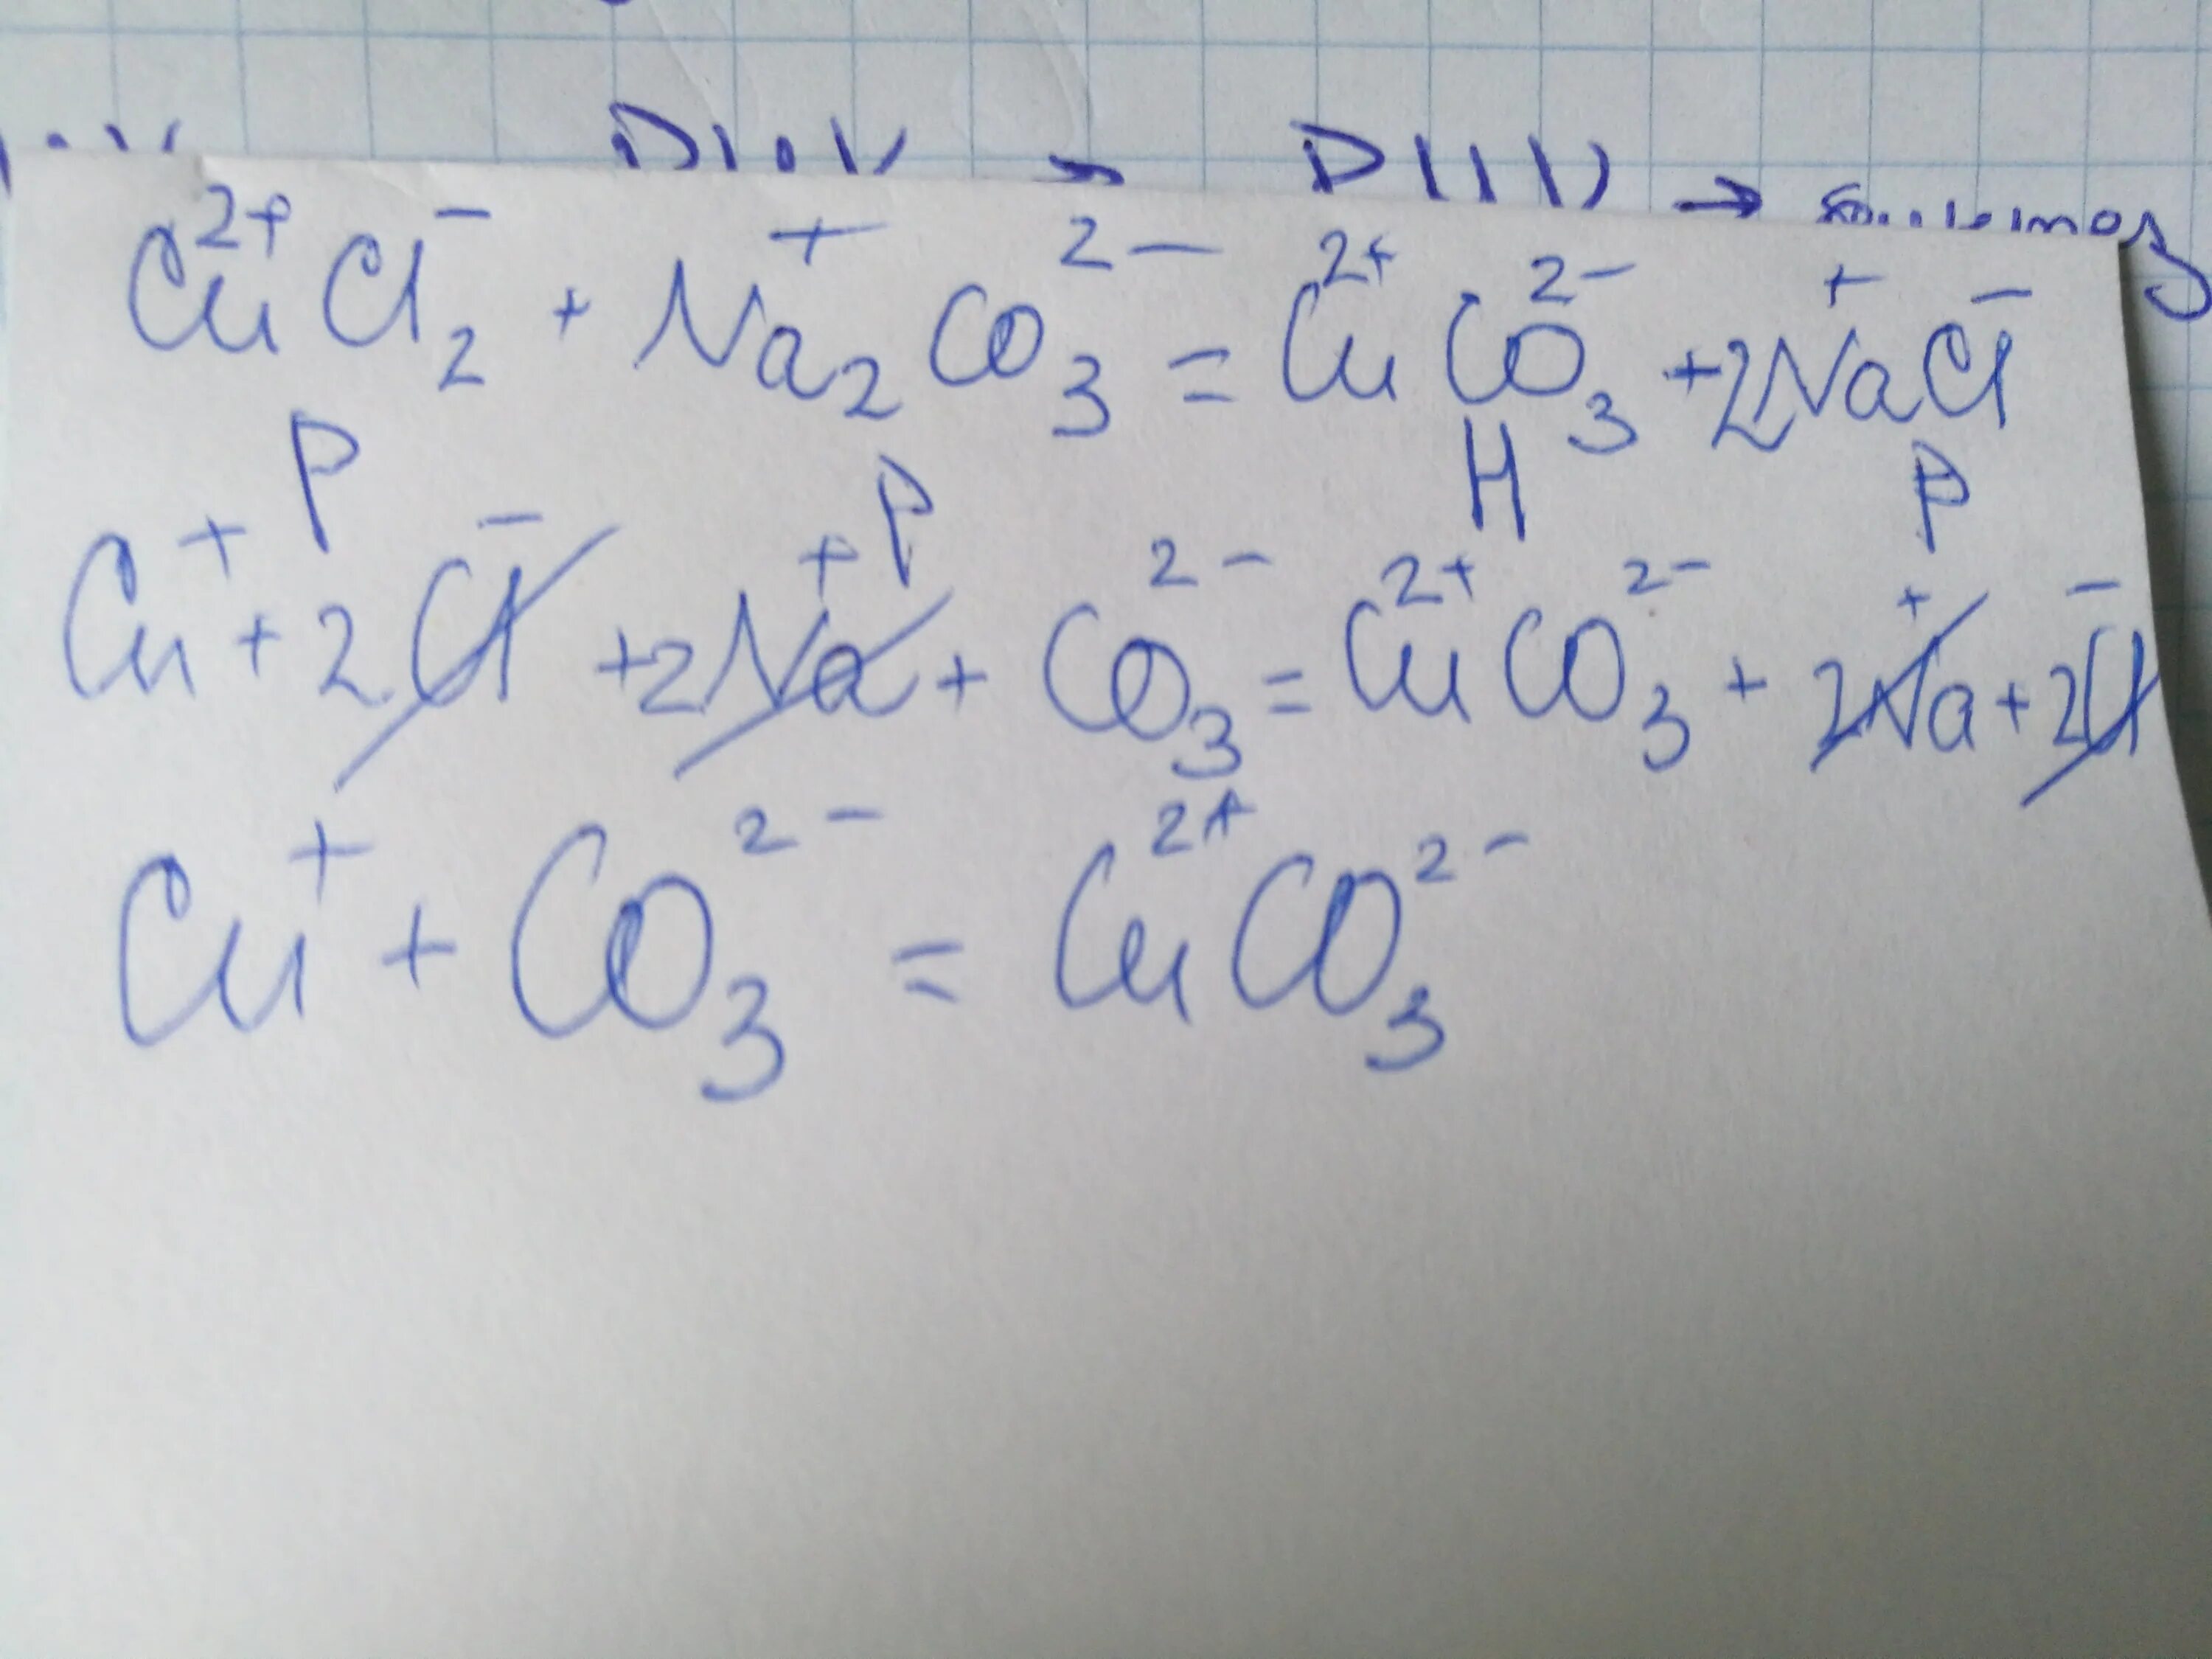 Cucl2 na2s. Cucl2+na2s ионное уравнение полное. Cucl2+h2s ионное уравнение. Cucl2+agno3 полное и сокращенное ионное уравнение. Cucl2 cu no3 2 h2o